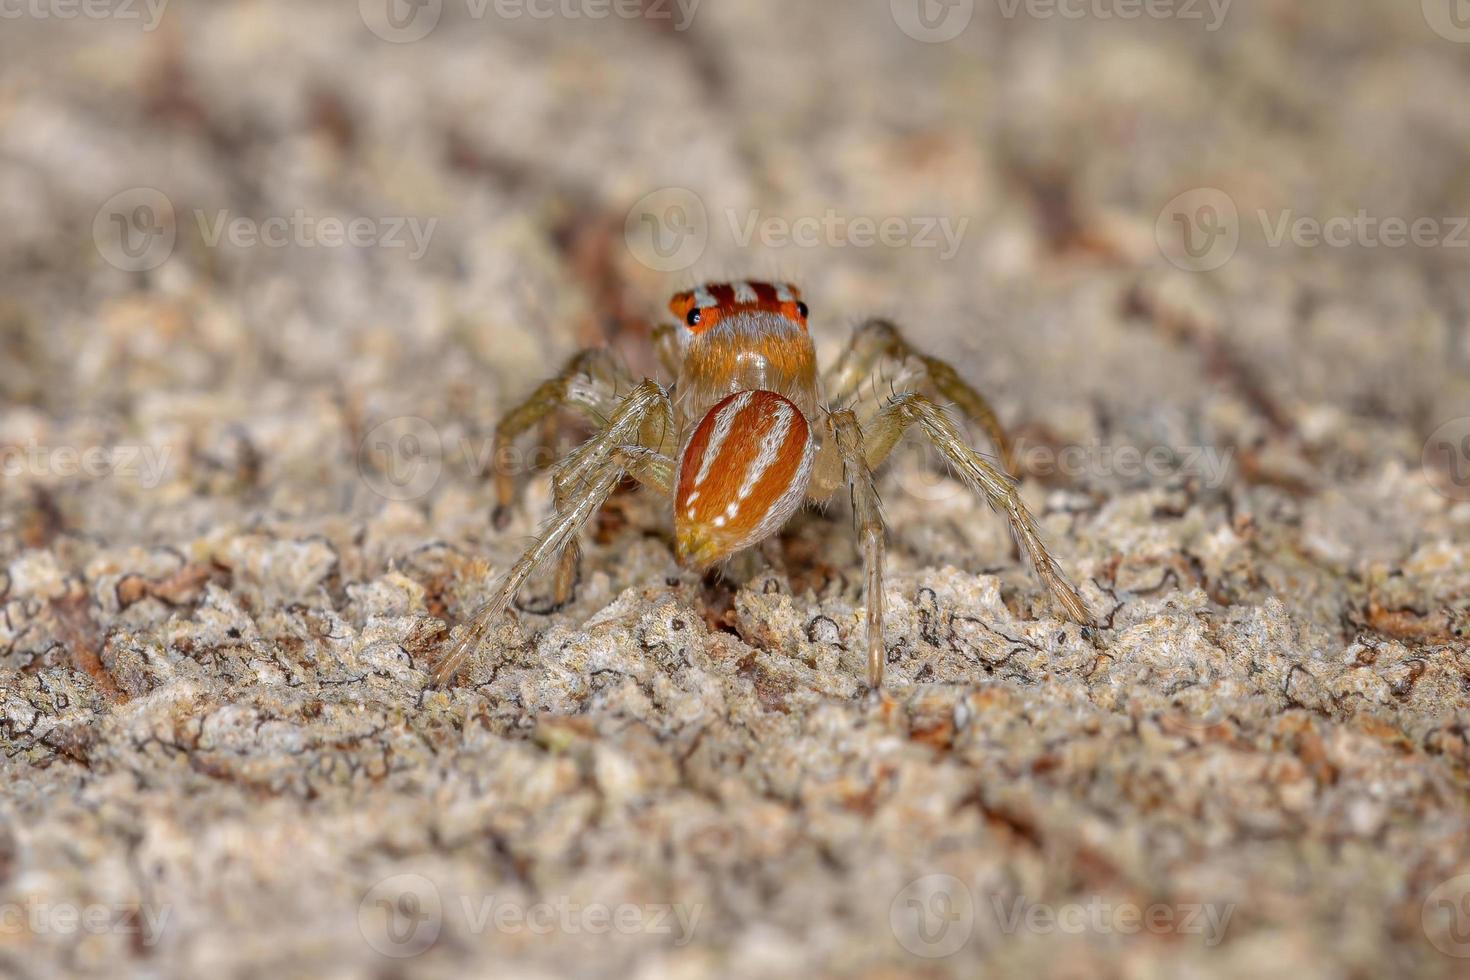 petite araignée sauteuse mâle photo